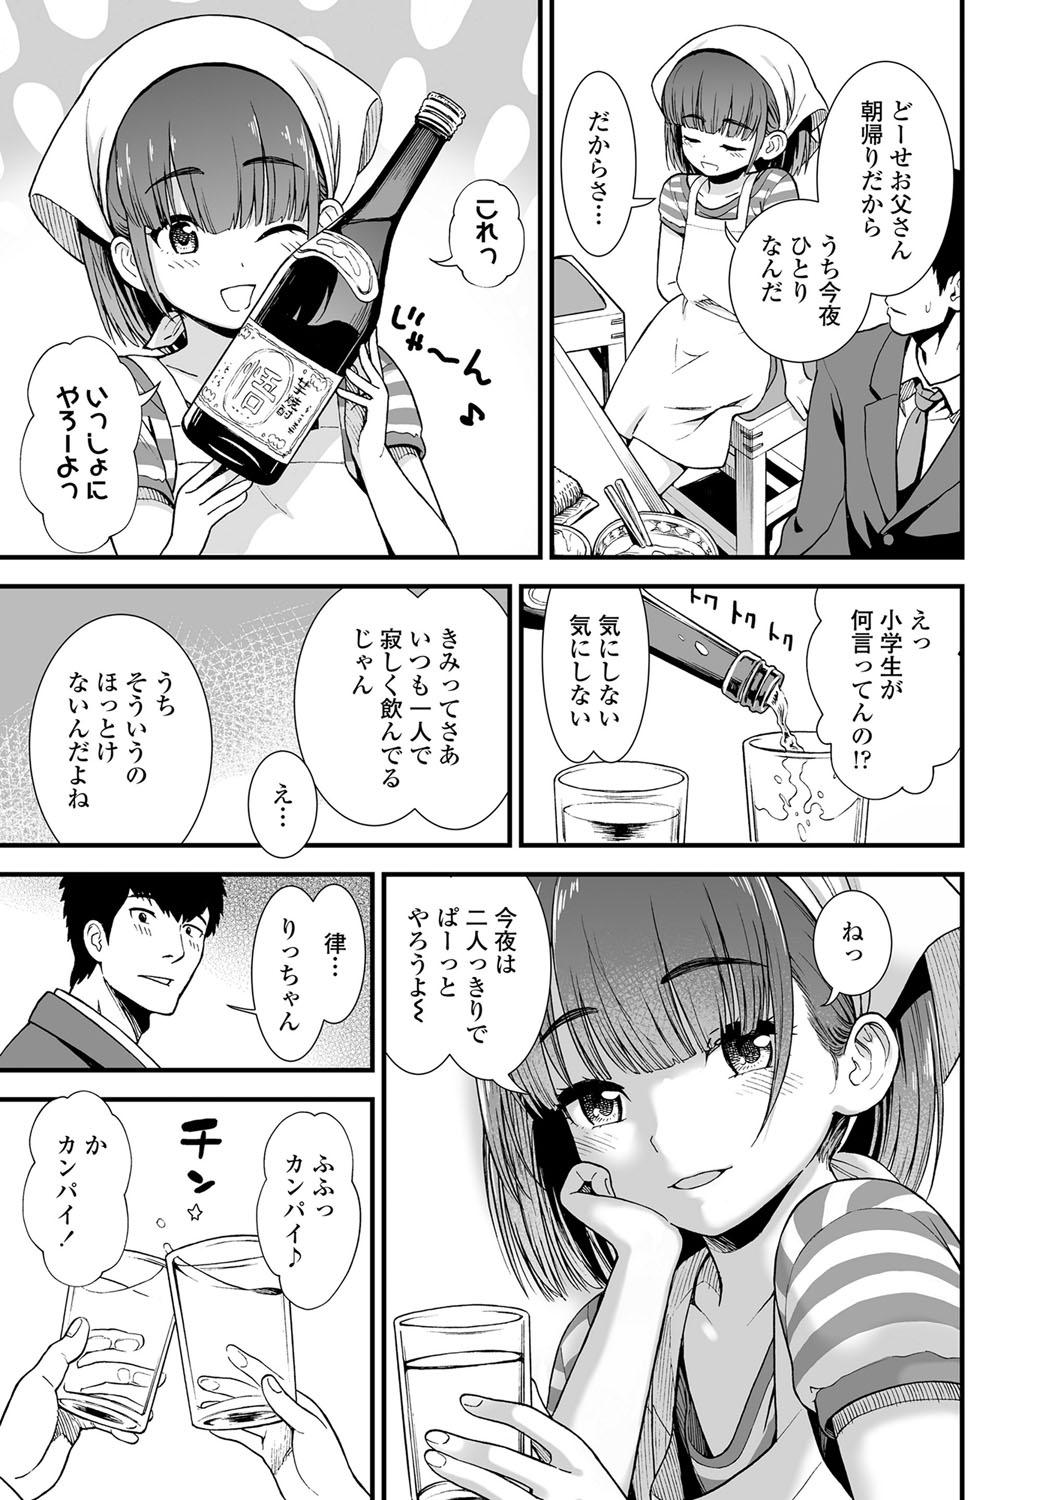 Screaming Ore wa Kuzu dakara koso Sukuwareru Kenri ga Aru! Femdom - Page 8